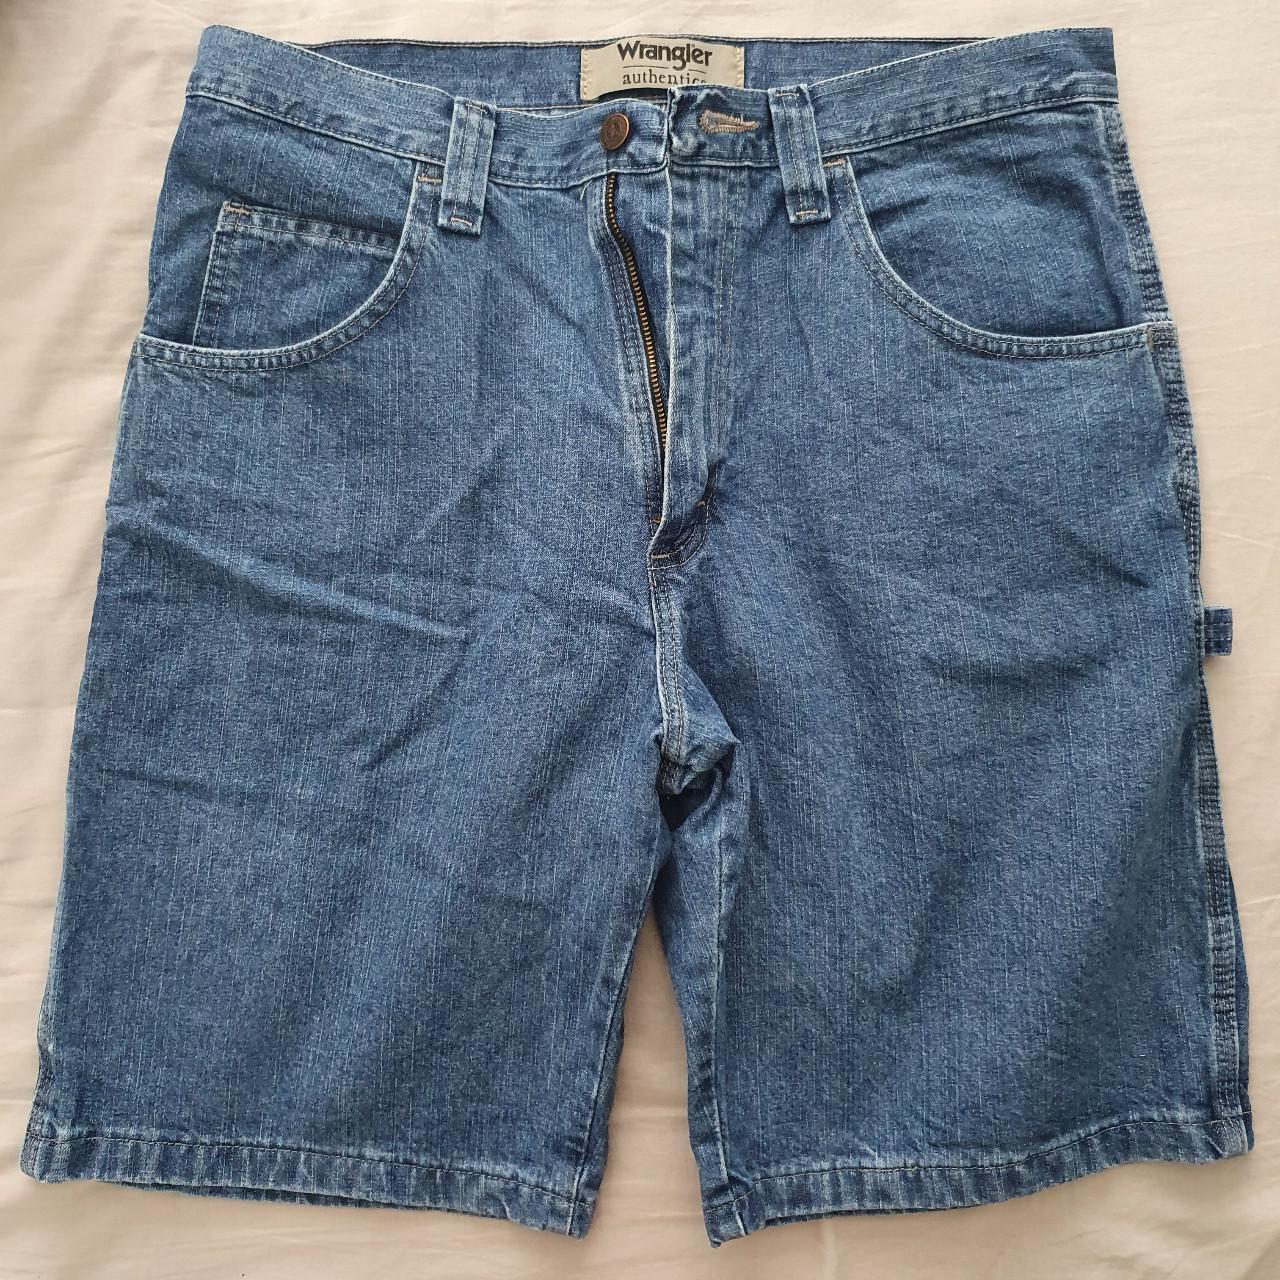 Blue Wrangler carpenter jean shorts with belt loop... - Depop